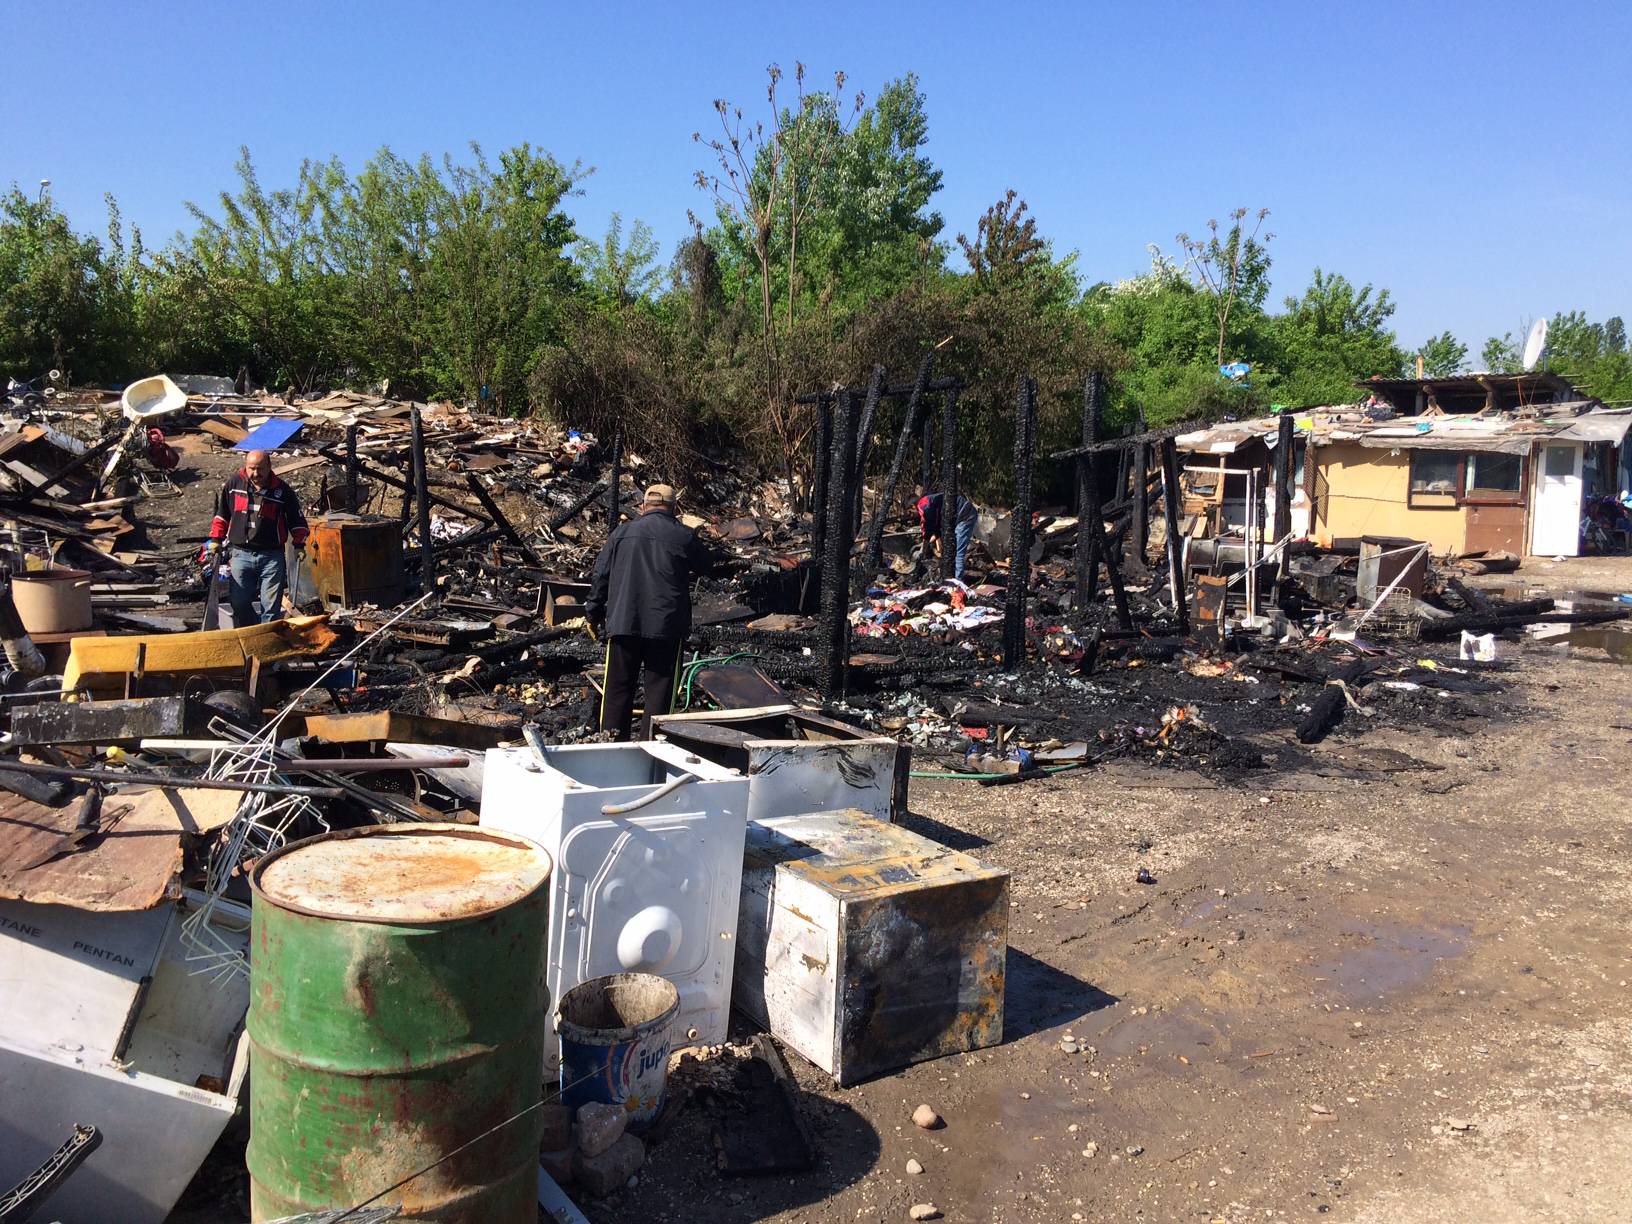 Peteročlana obitelj iz izgorjele kuće smještena u prihvatilište Kosnica